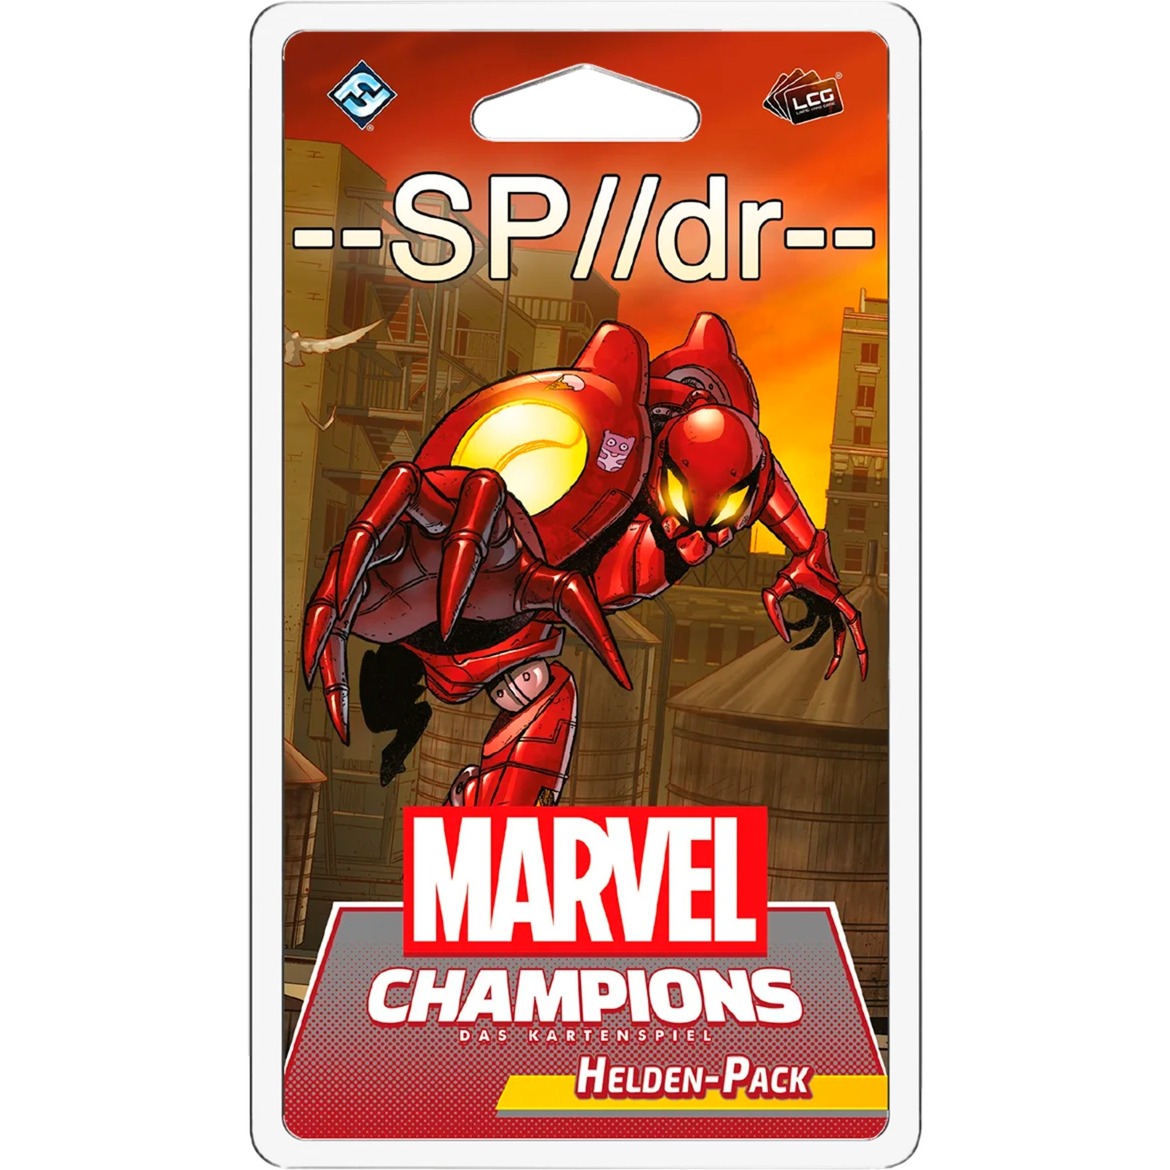 Marvel Champions: Das Kartenspiel - SP//dr (Helden-Pack) von Asmodee